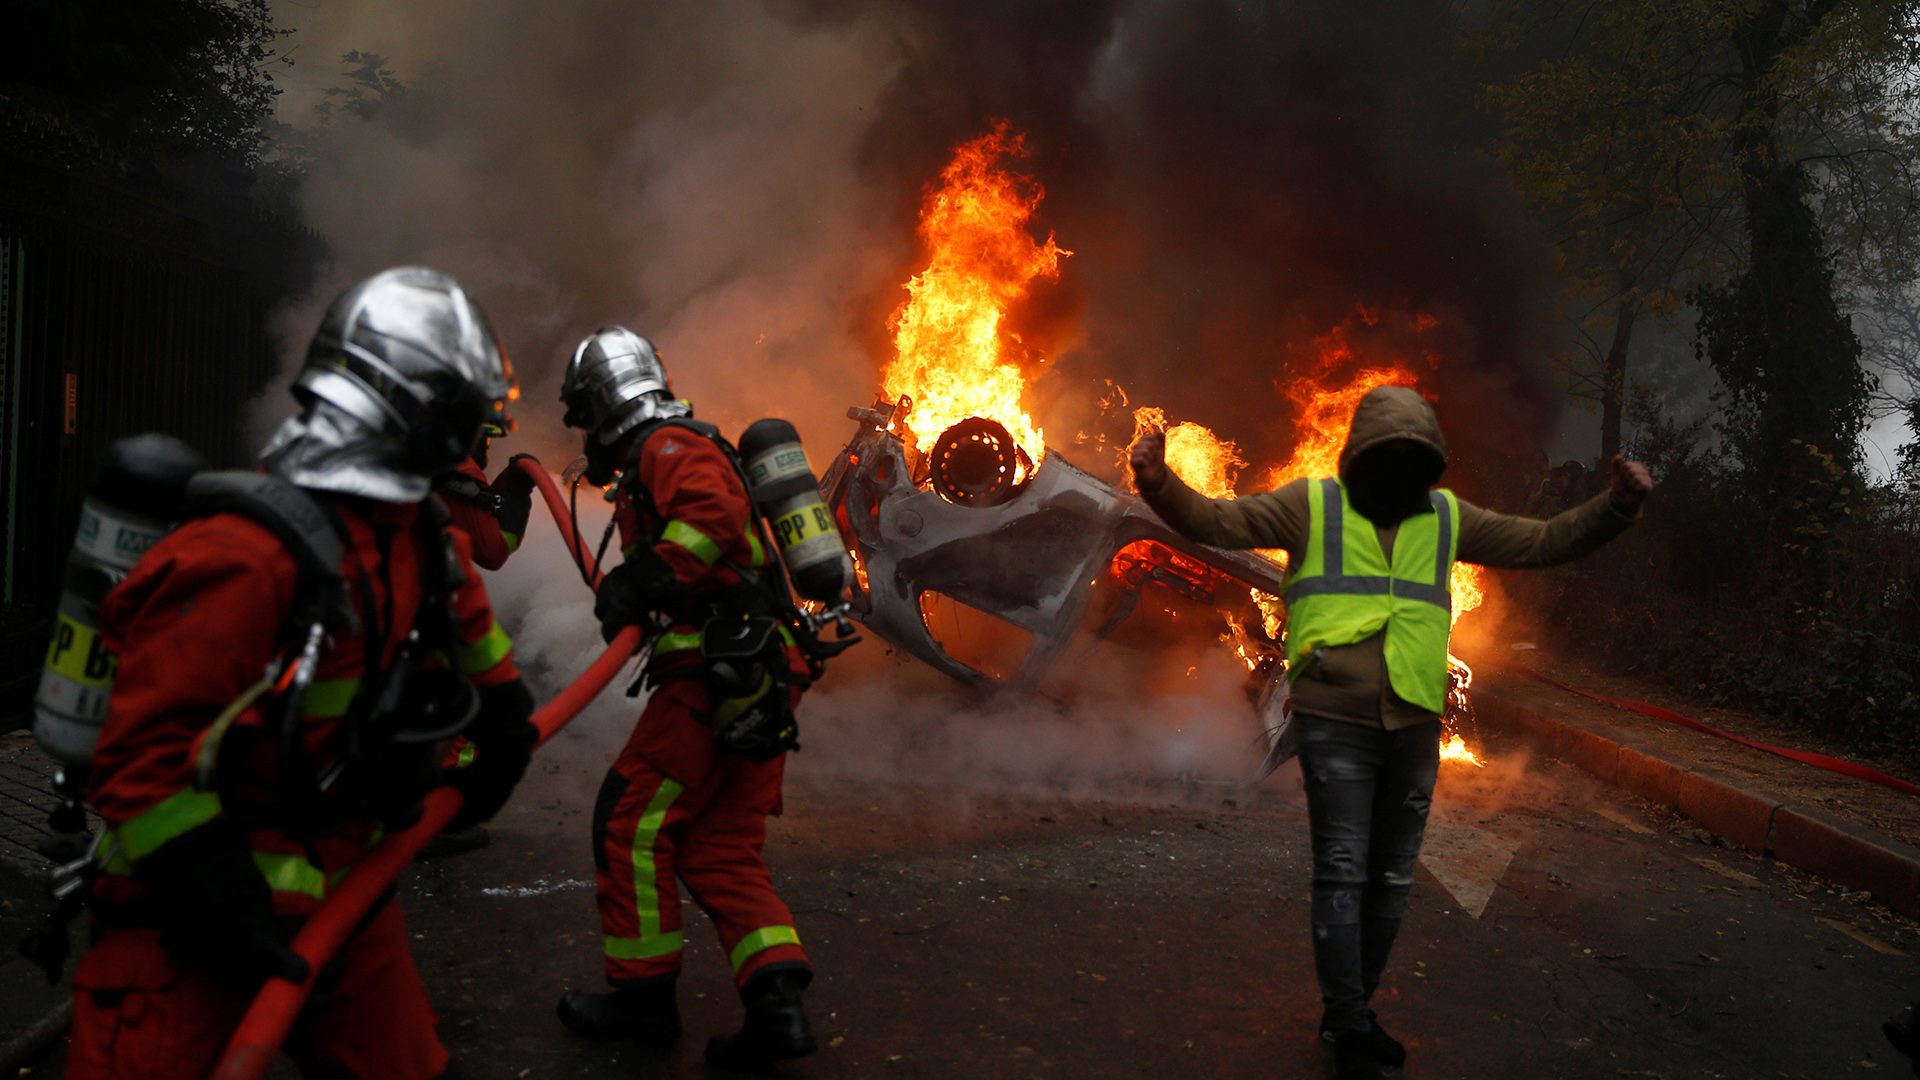 Feuerwehr löscht brennnedes Auto | Bildquelle: REUTERS